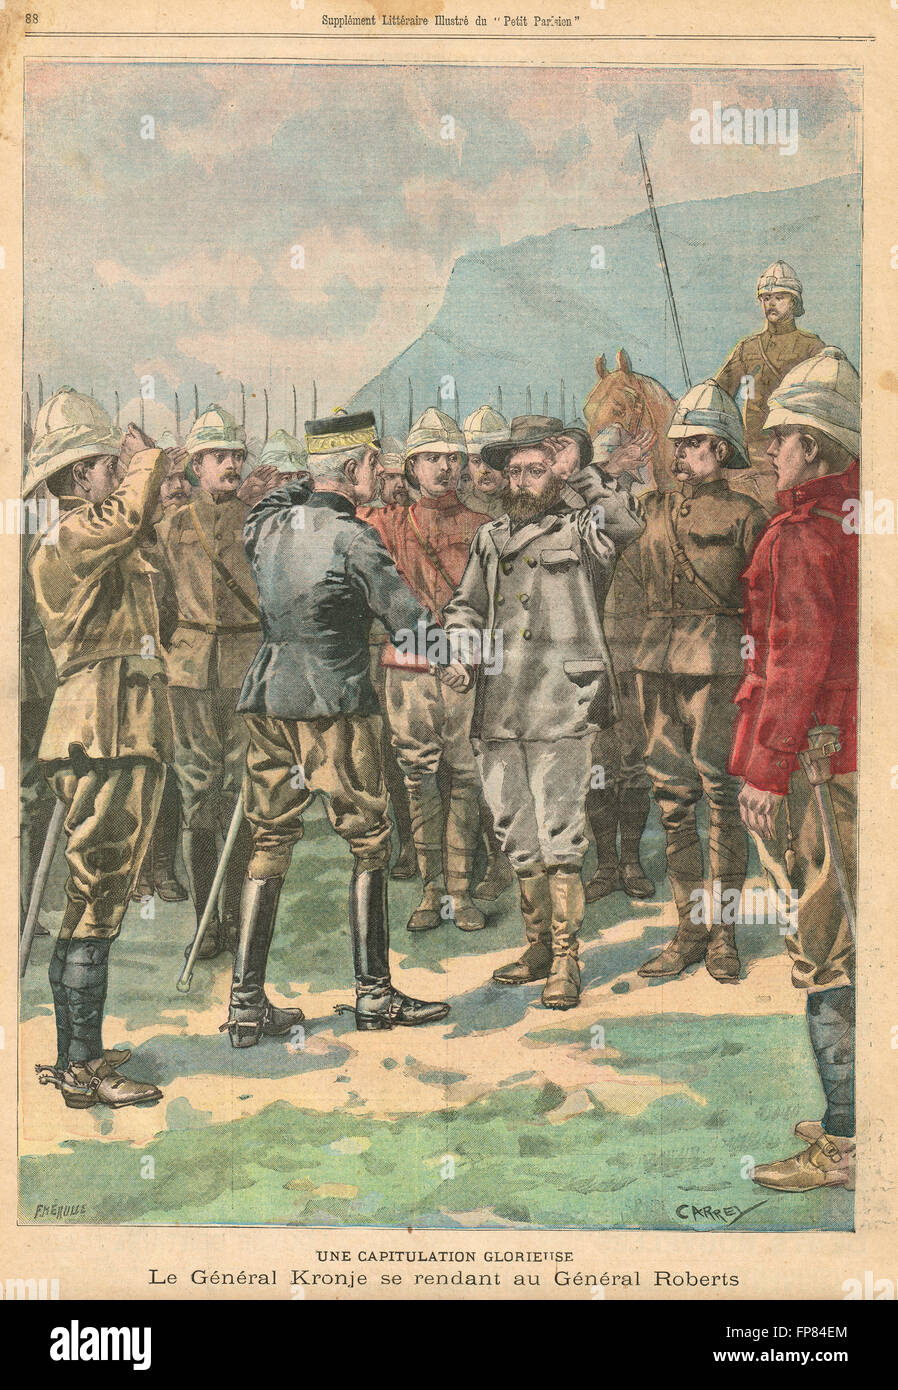 Kapitulation von General Piet Cronjé, Schlacht von Paardeberg, Boer war 27. Februar 1900. Französische illustrierte Zeitung Le Petit Parisien Illustration Stockfoto